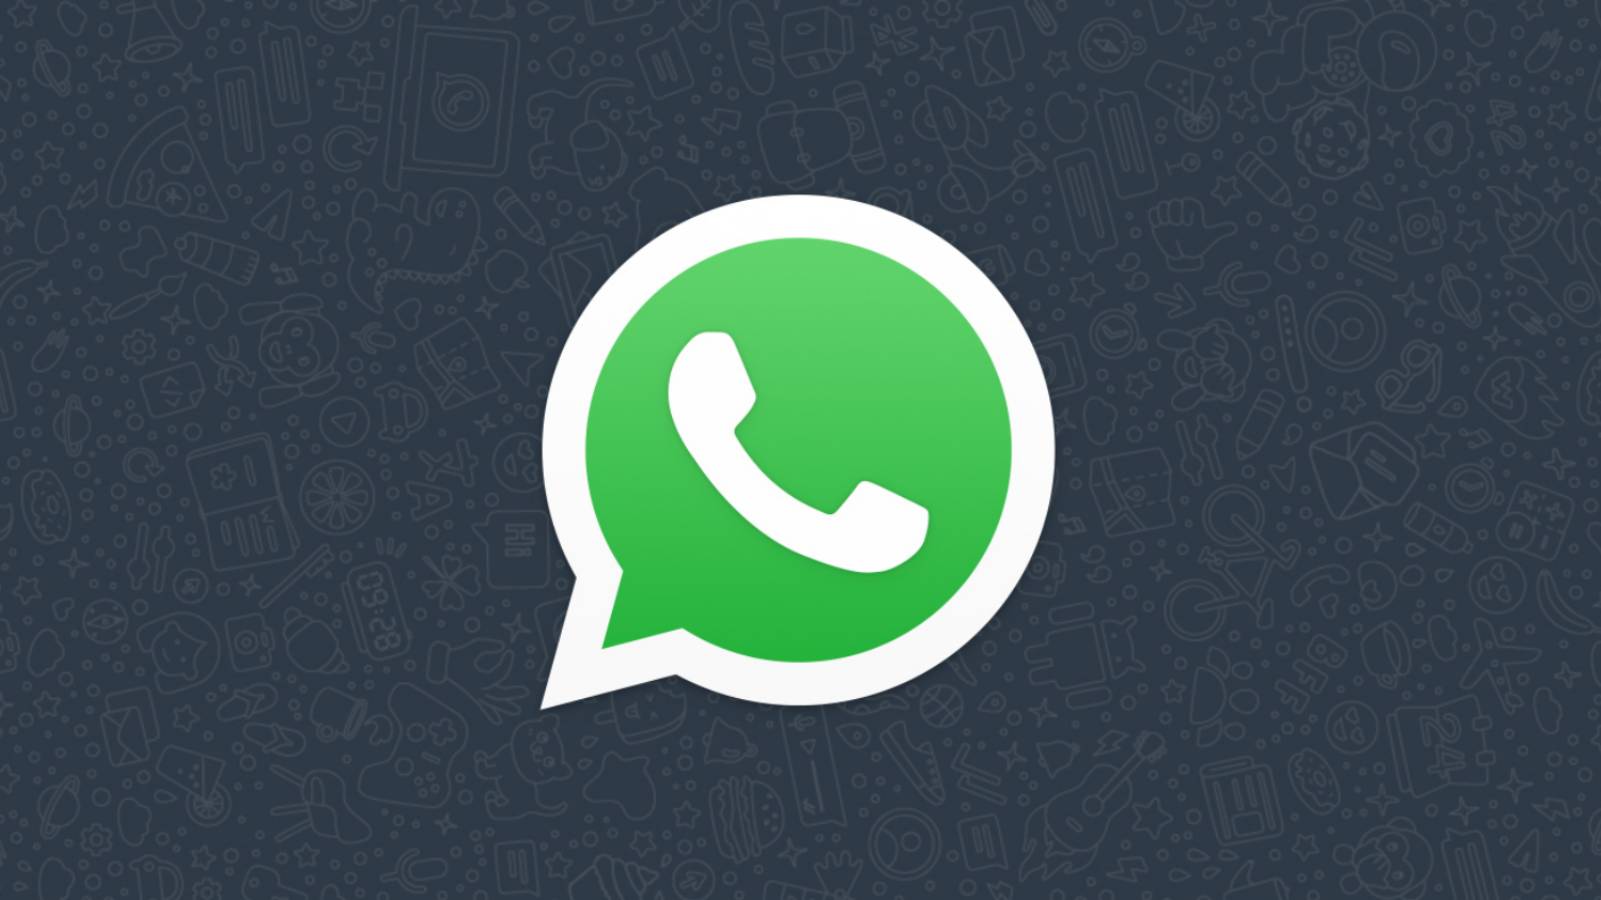 OFICJALNE powiadomienie WhatsApp wysłane teraz do MILIARDÓW ludzi